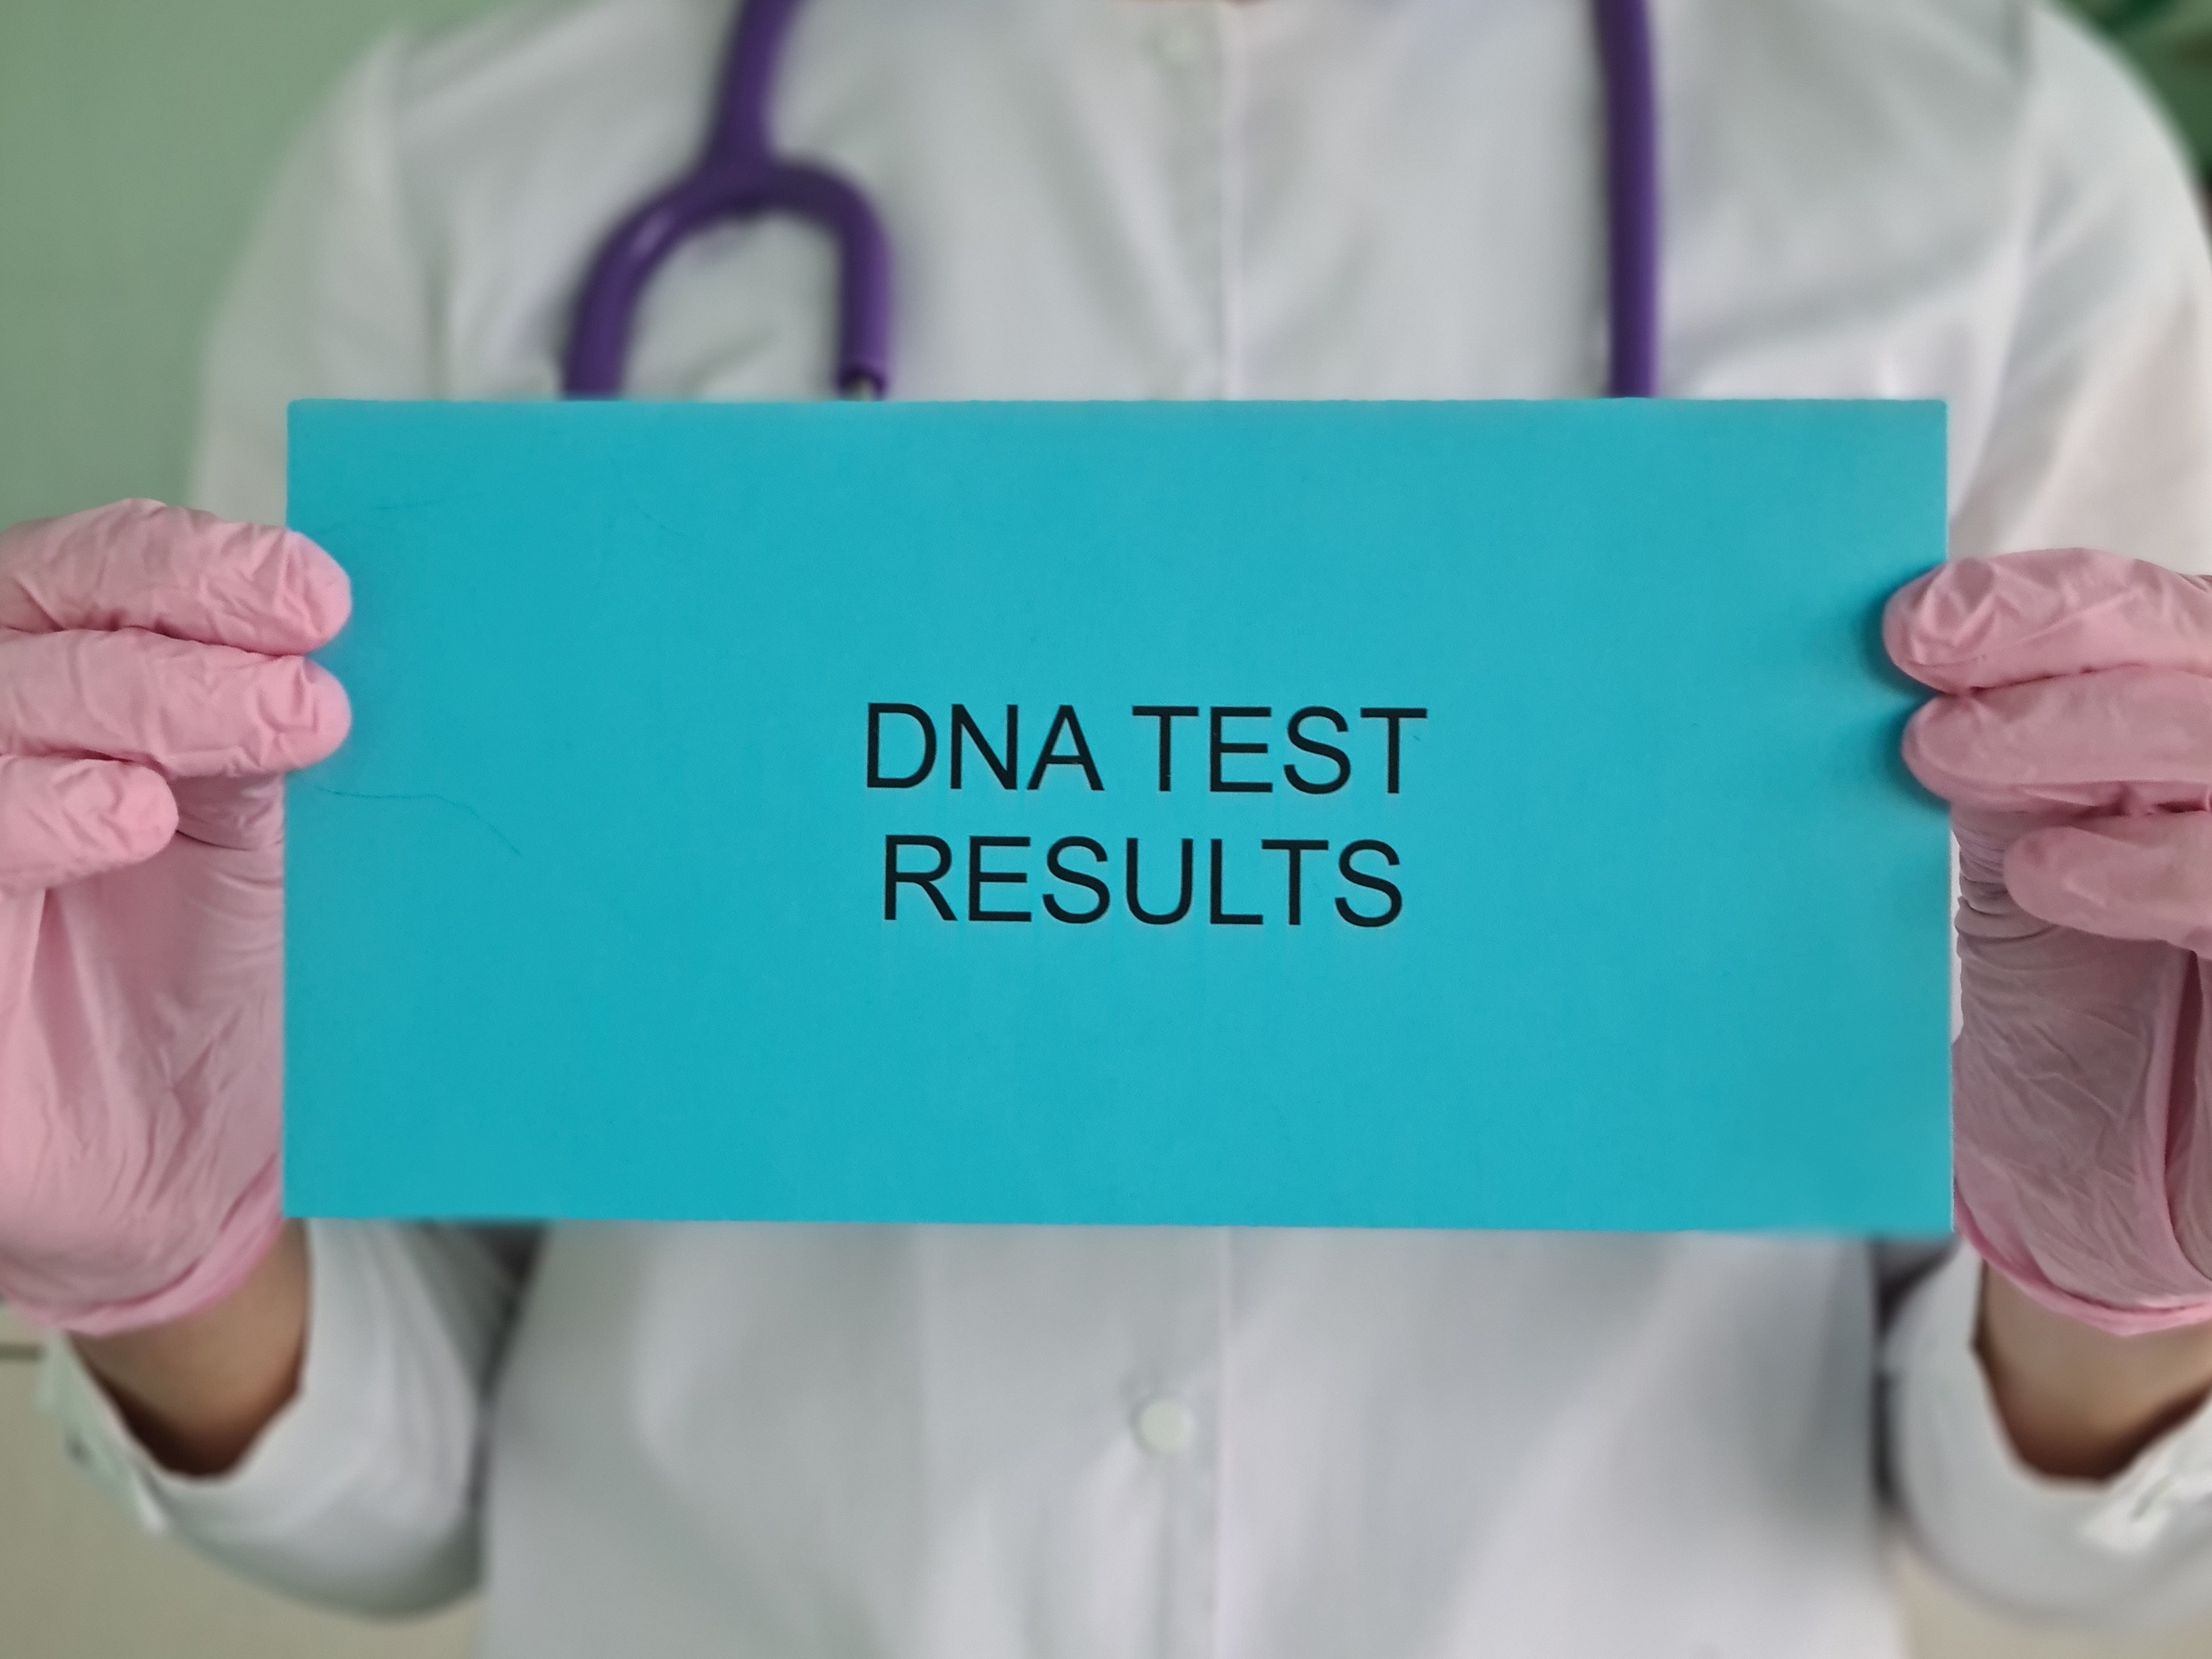 Ein Arzt hält einen Umschlag mit den Ergebnissen eines DNA-Tests | Quelle: Shutterstock